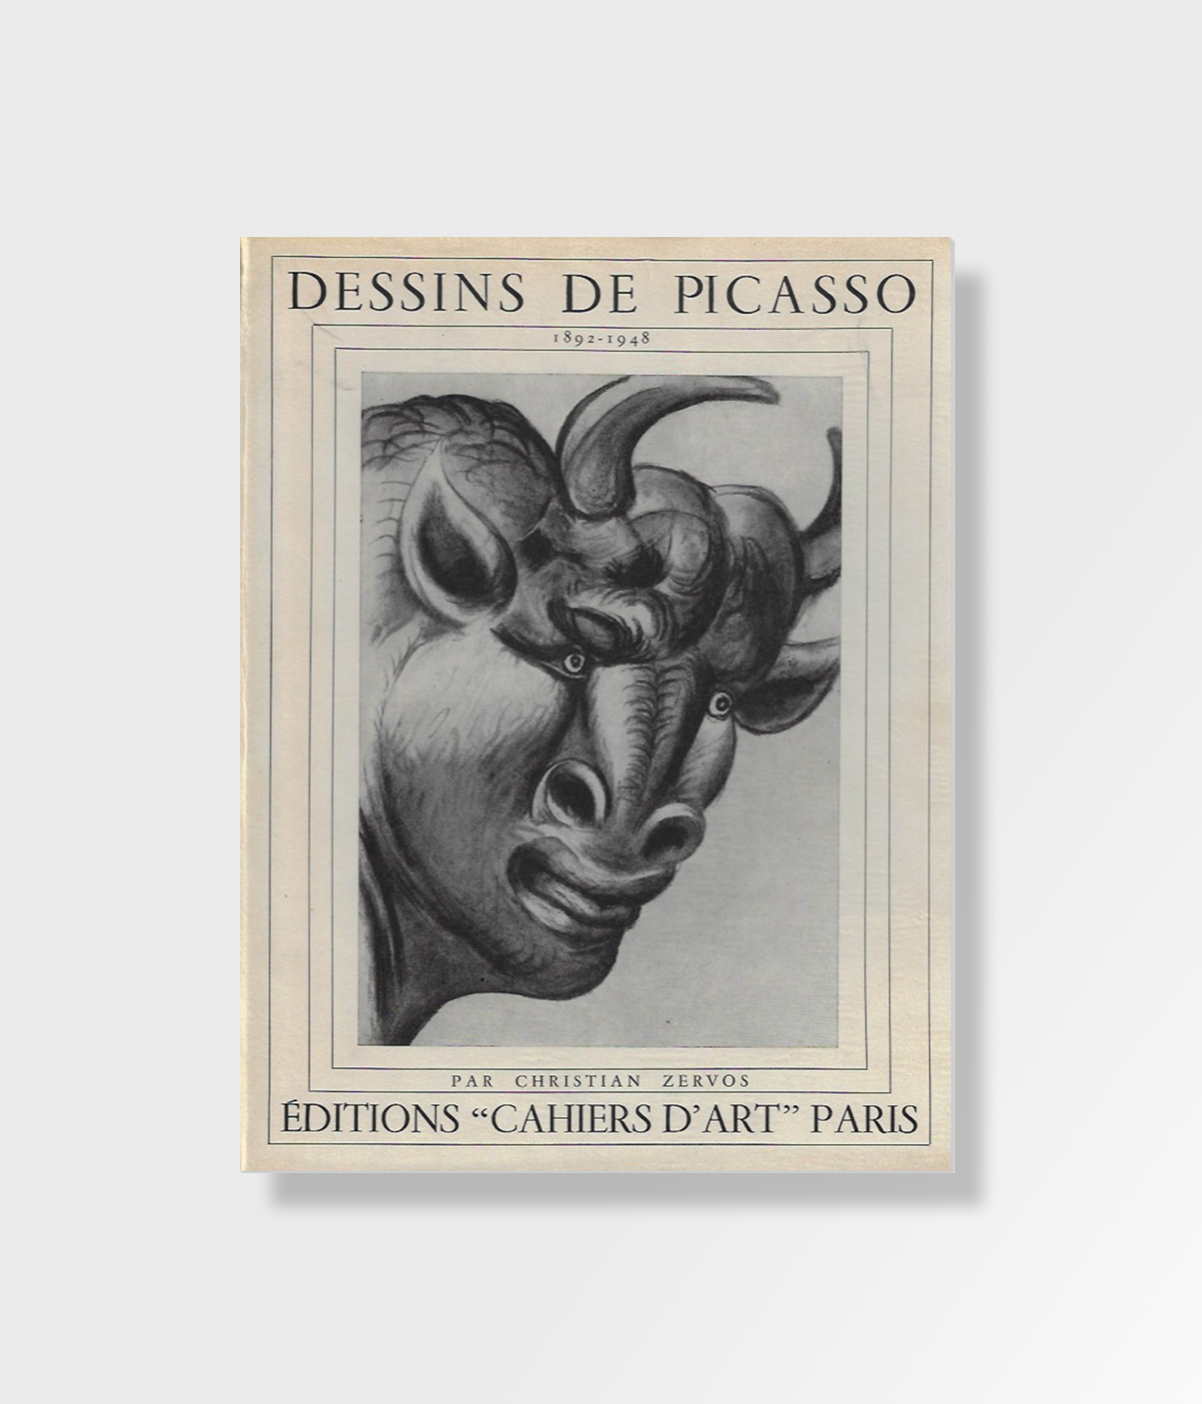 Dessins de Picasso (1892-1948)